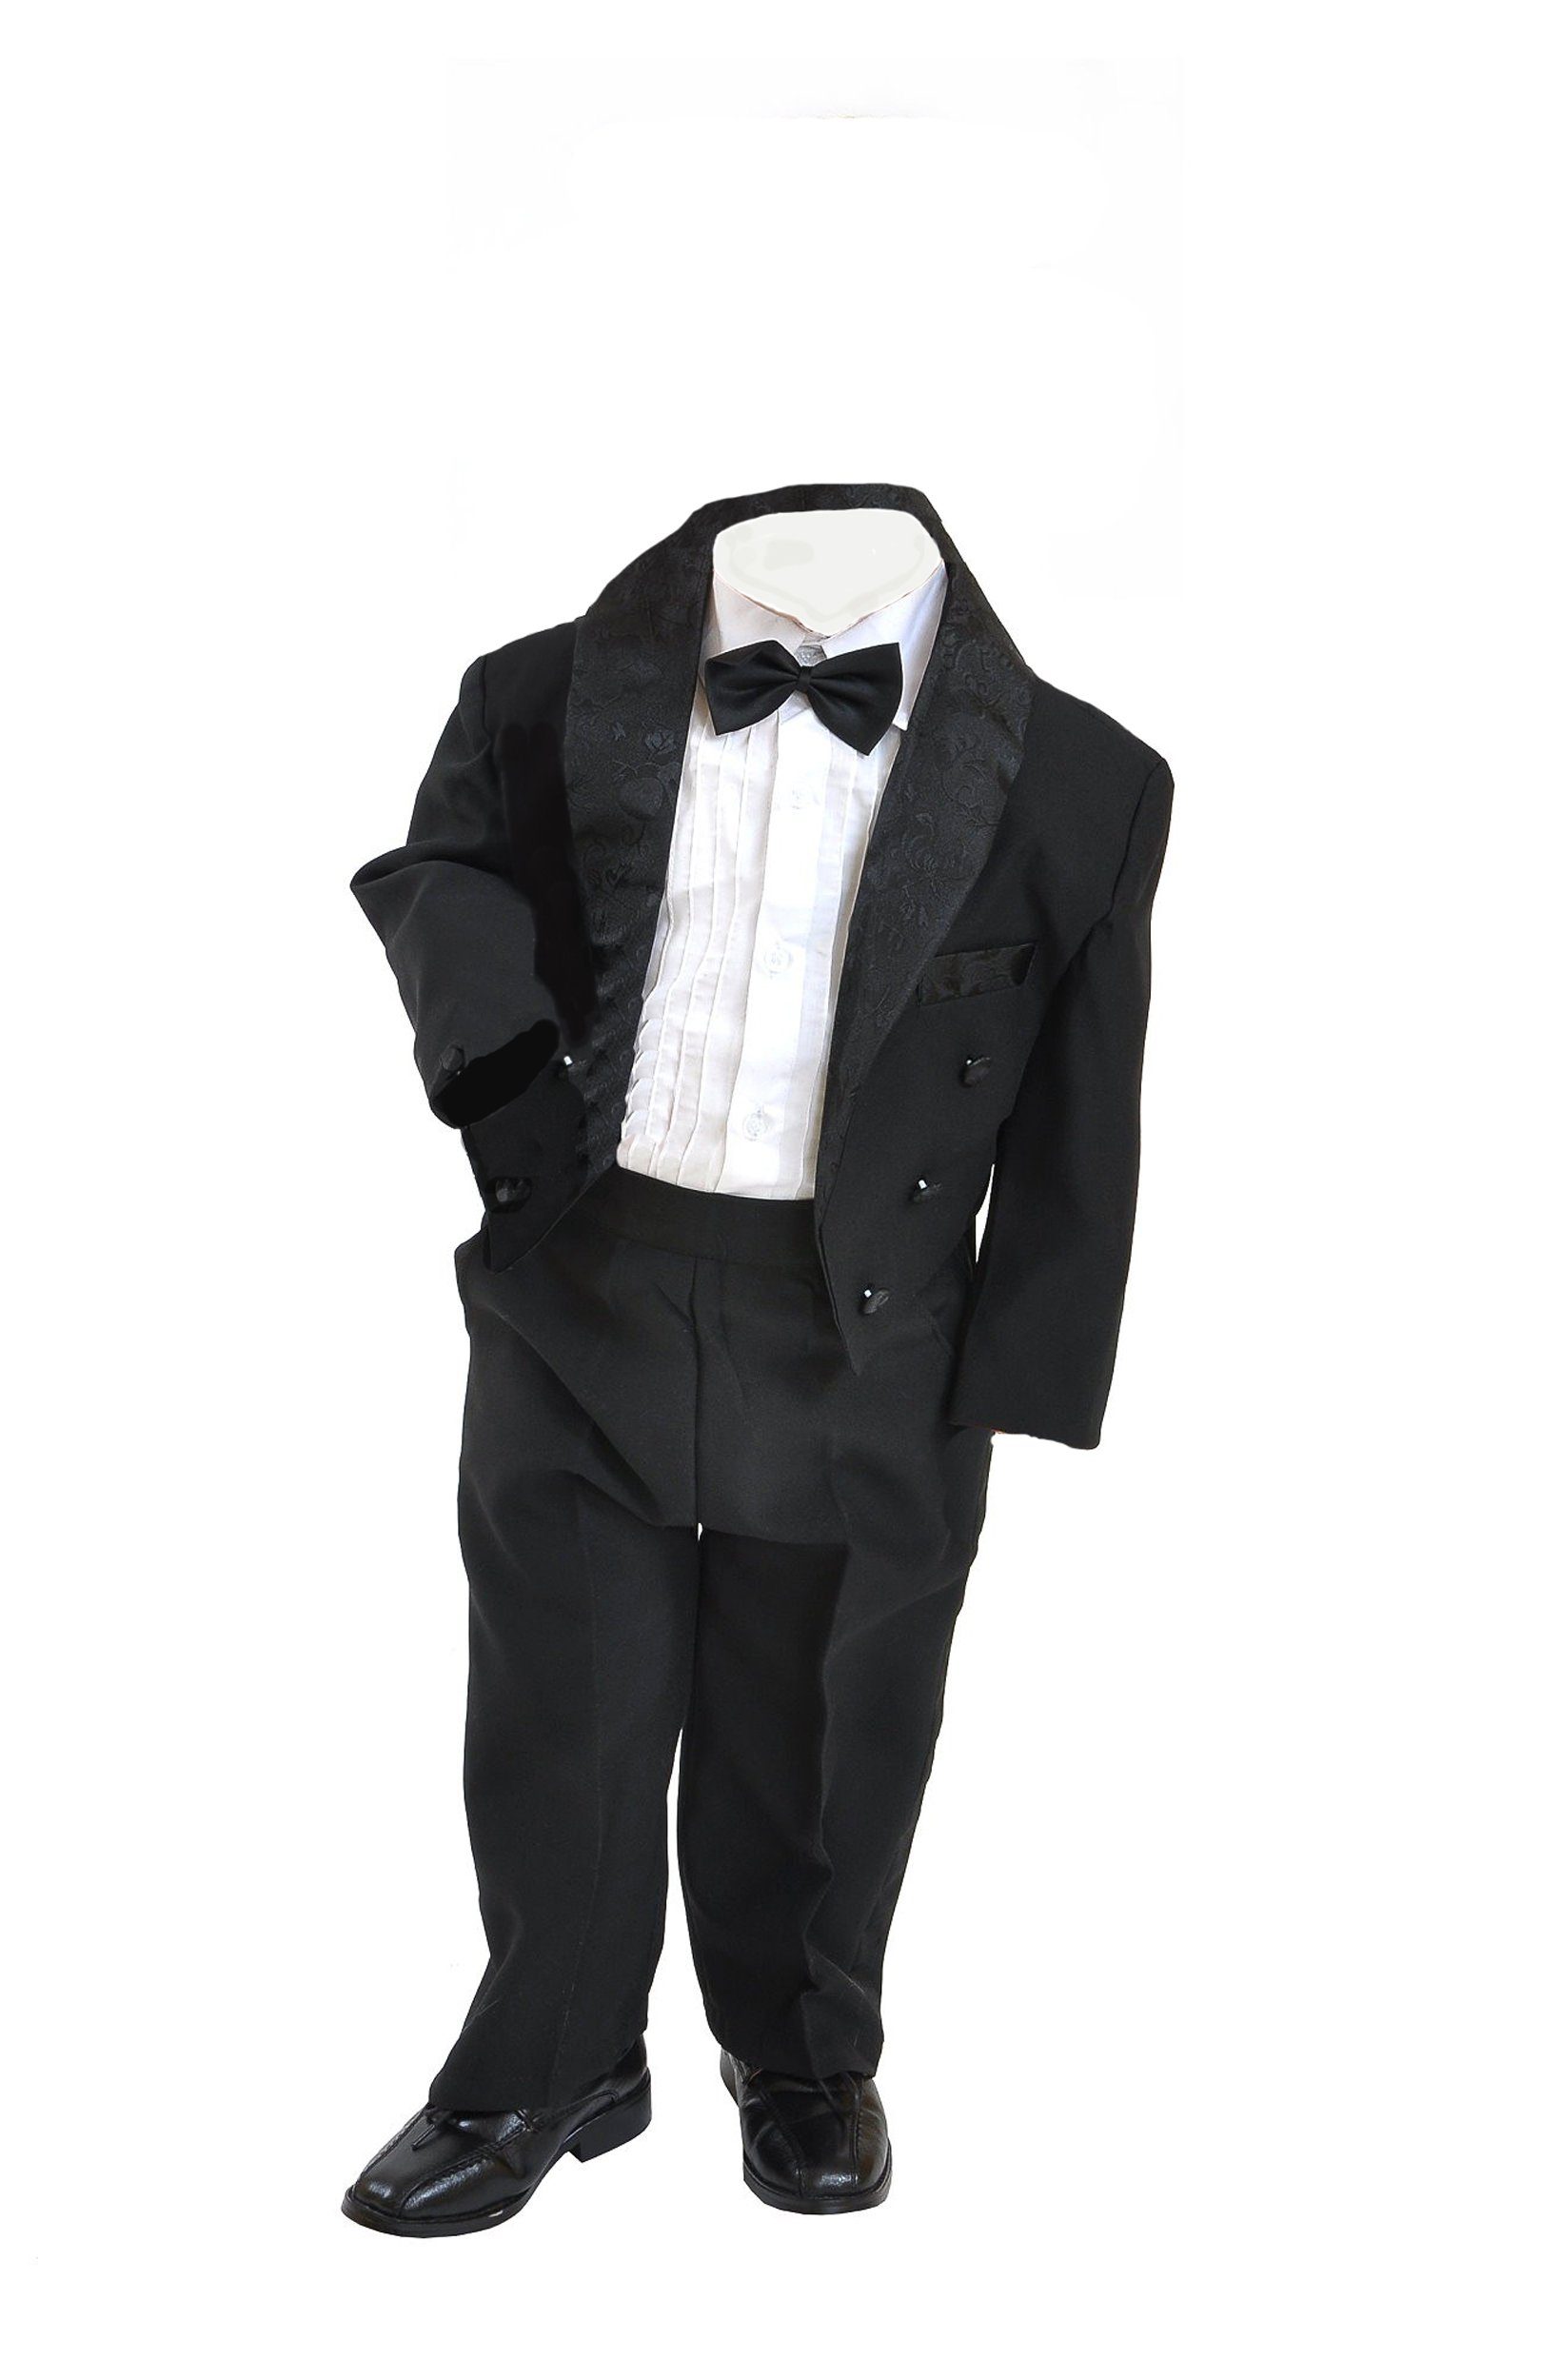 Family Trends 5-teiligen schwarz Look im im eleganten Set Anzug